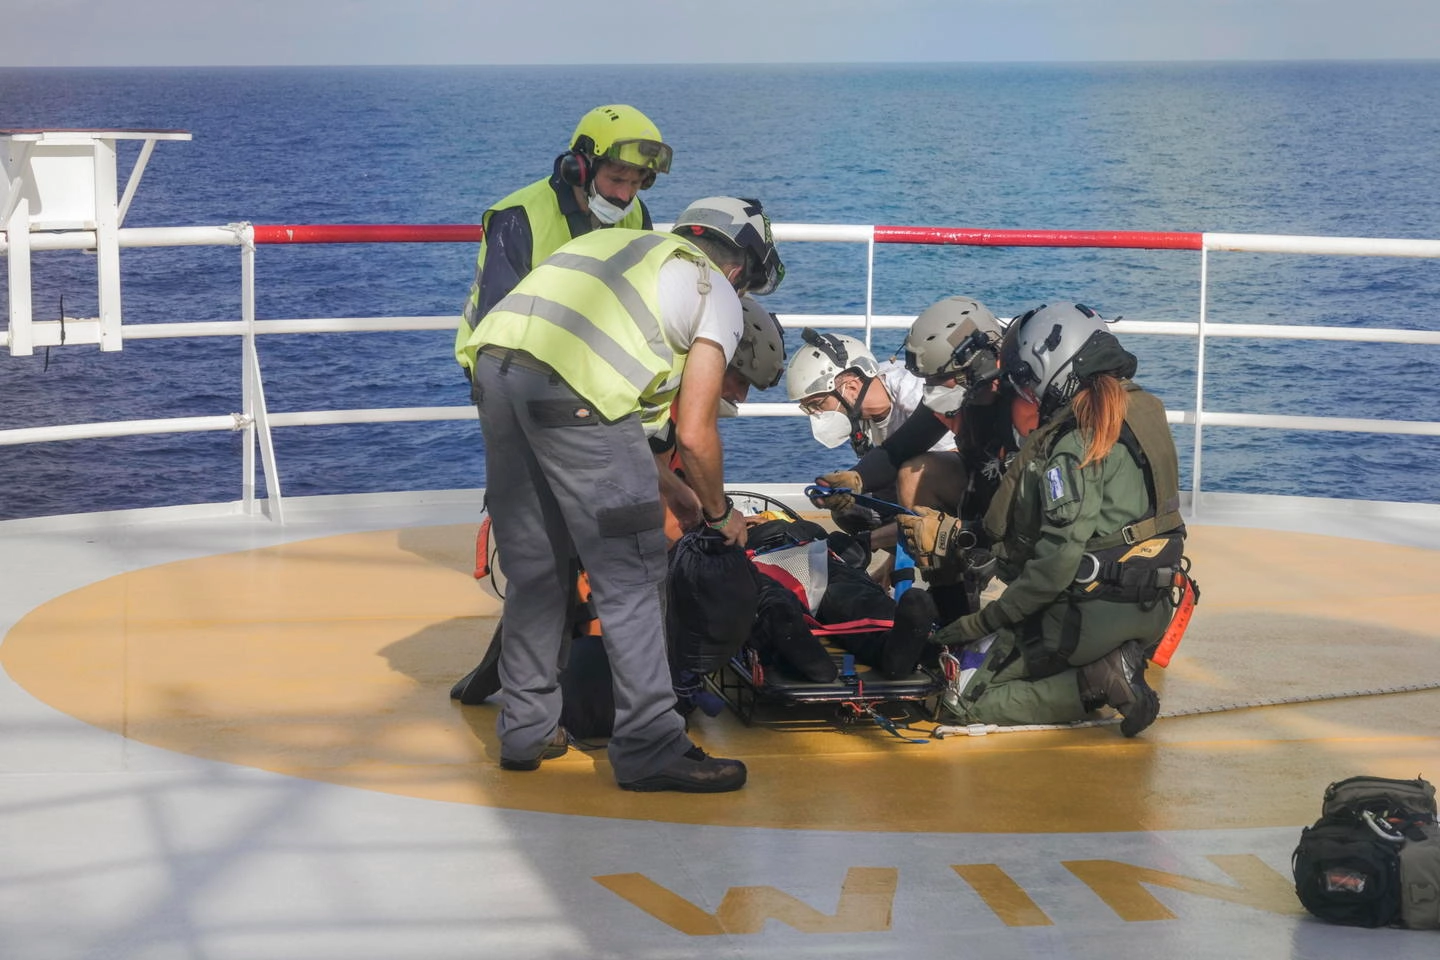 L'evacuazione di quattro persone dalla Ocean Viking (Ansa)